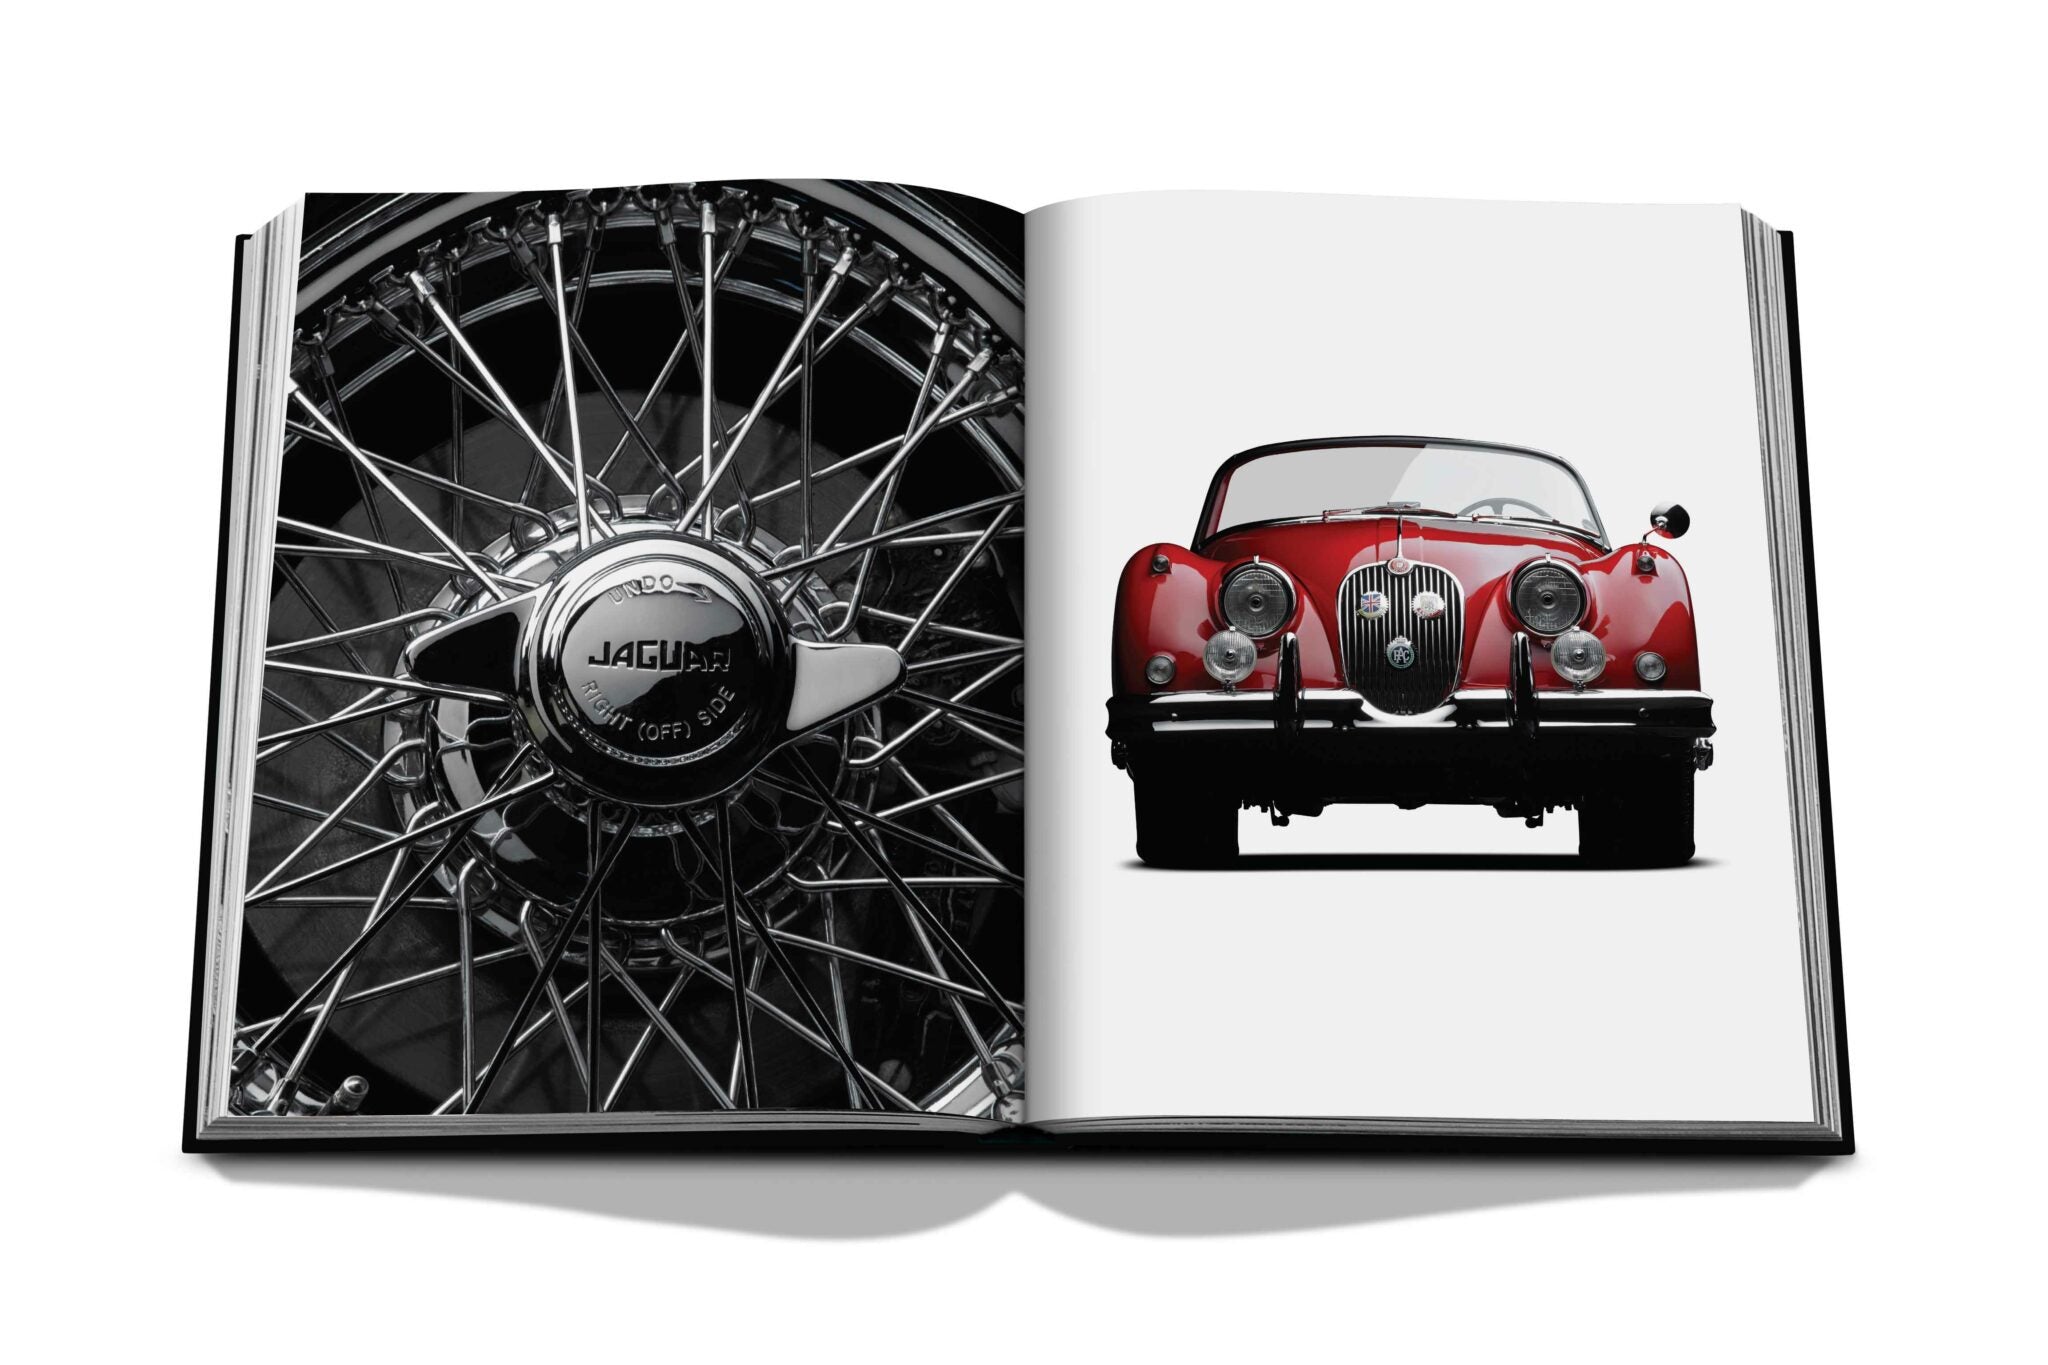 Assouline Iconic: arte, design, pubblicità e automobile